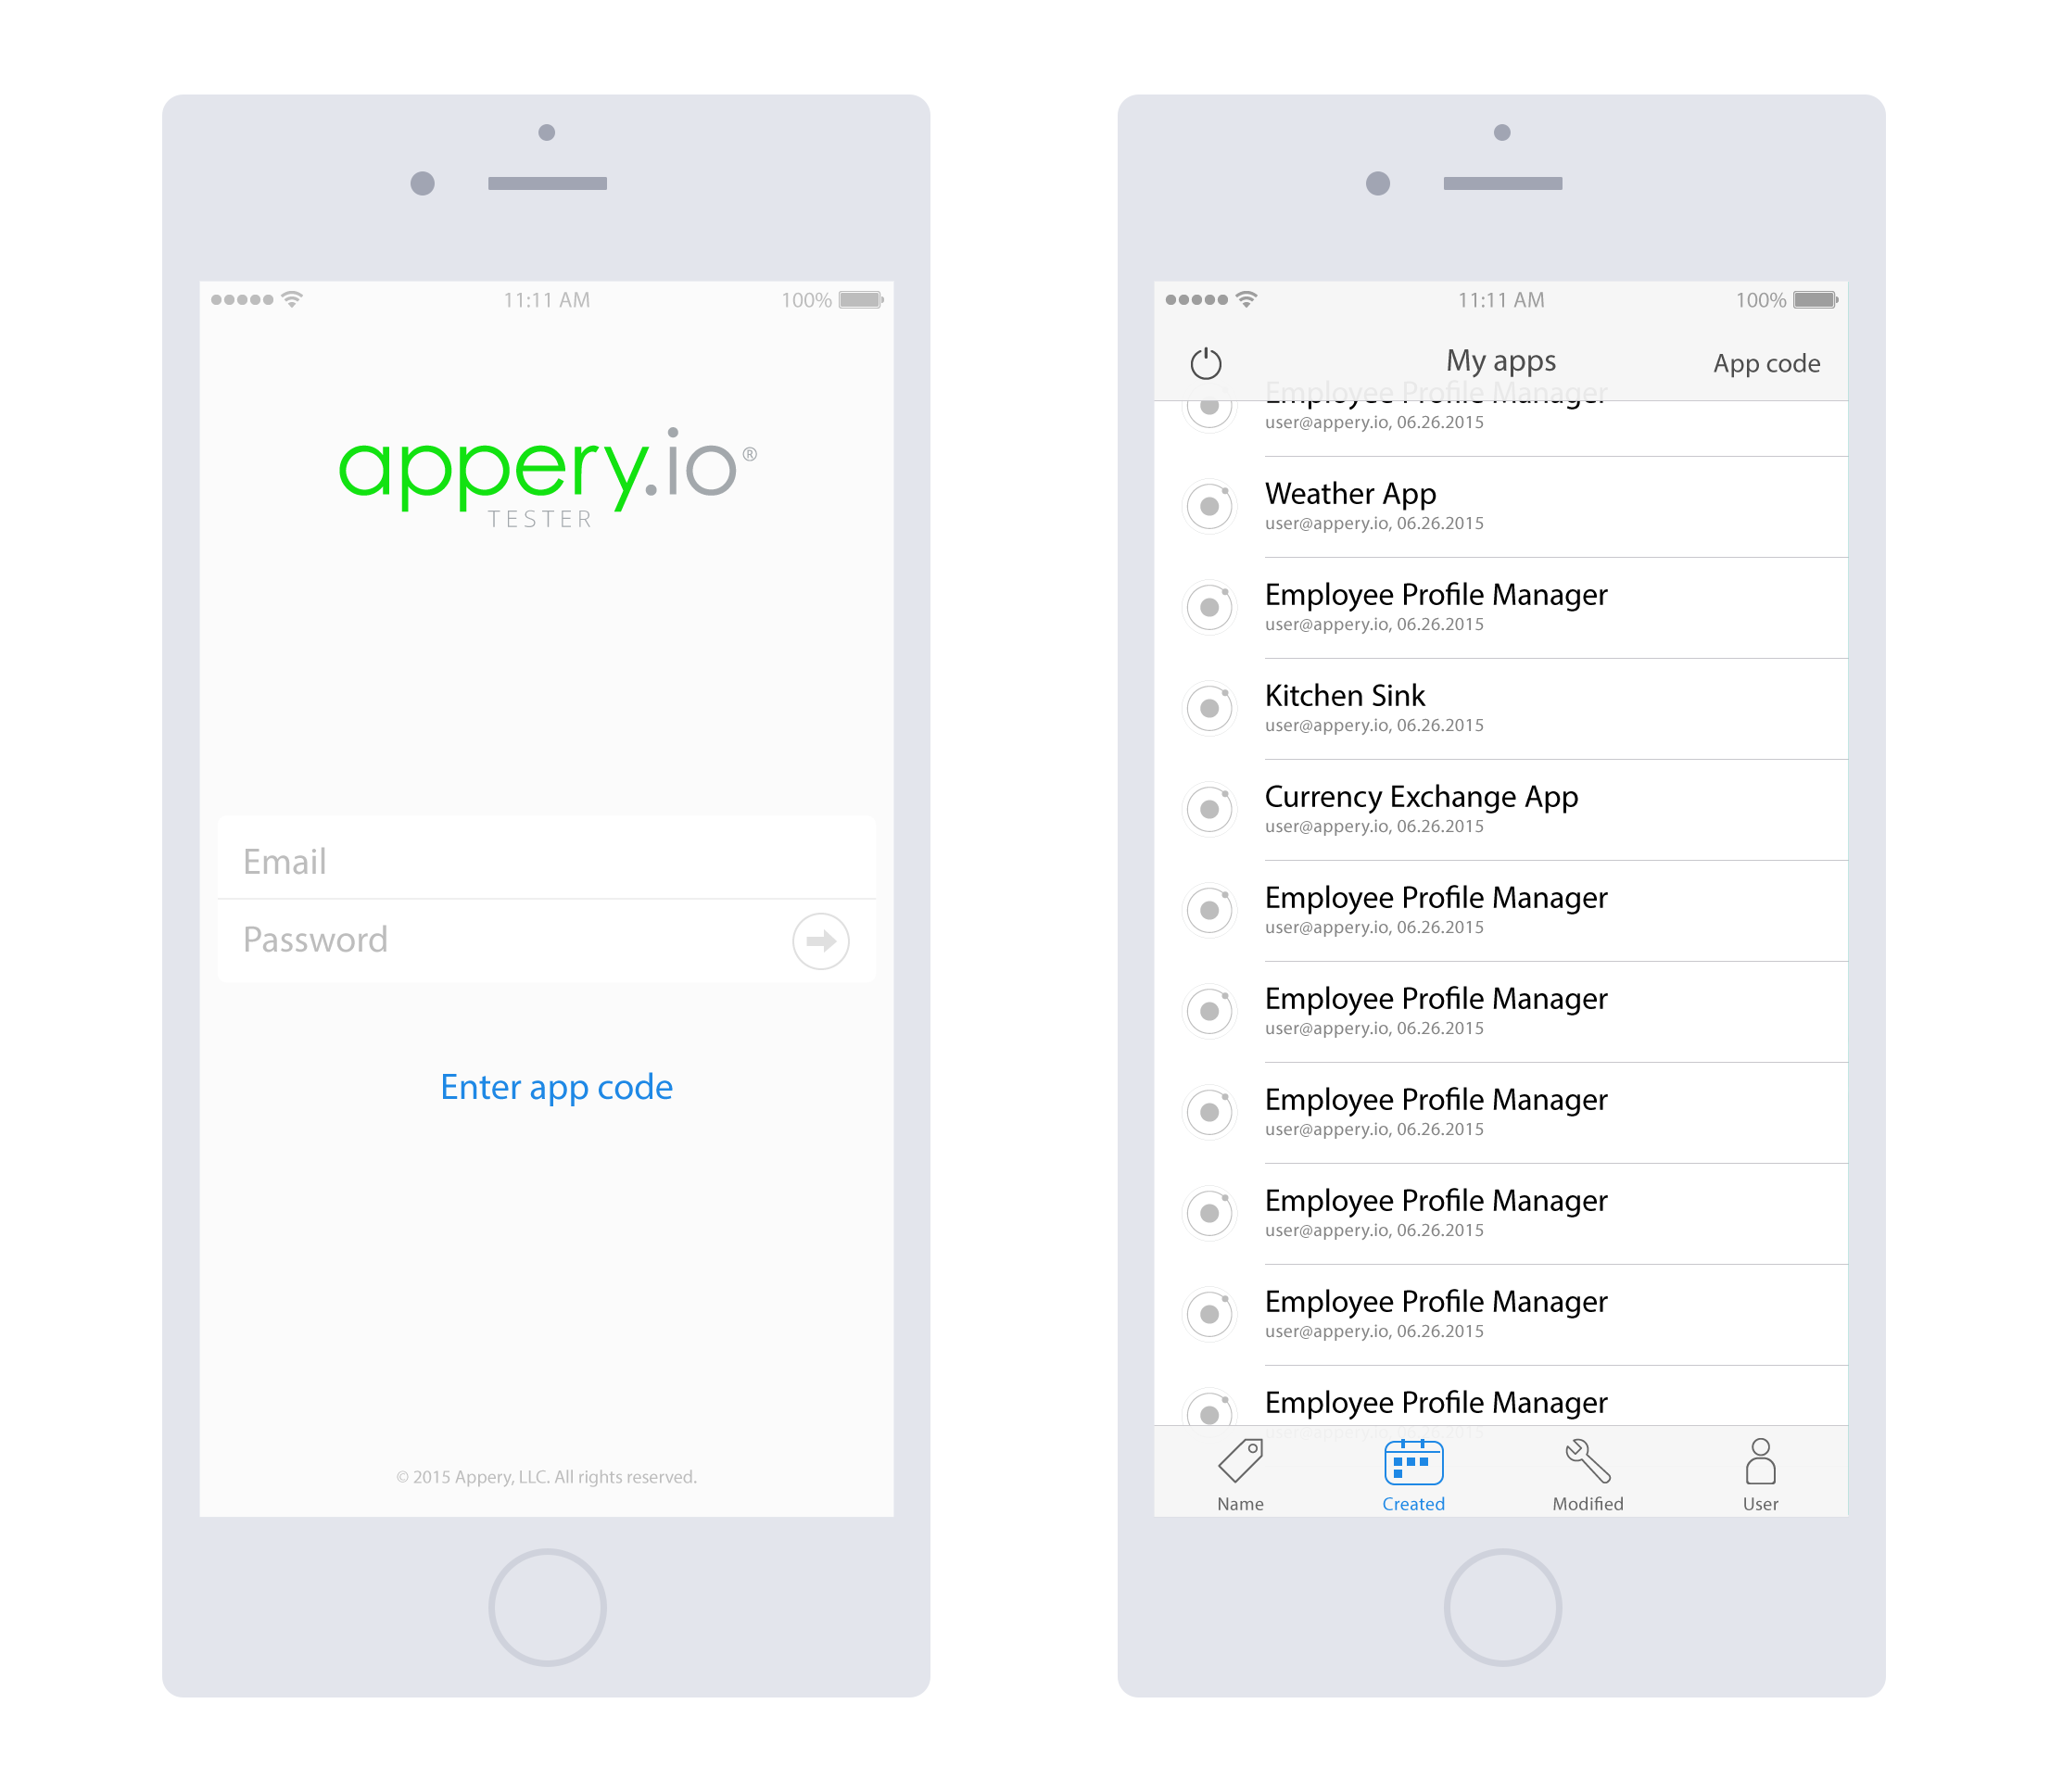 Appery.io Tester App for iOS